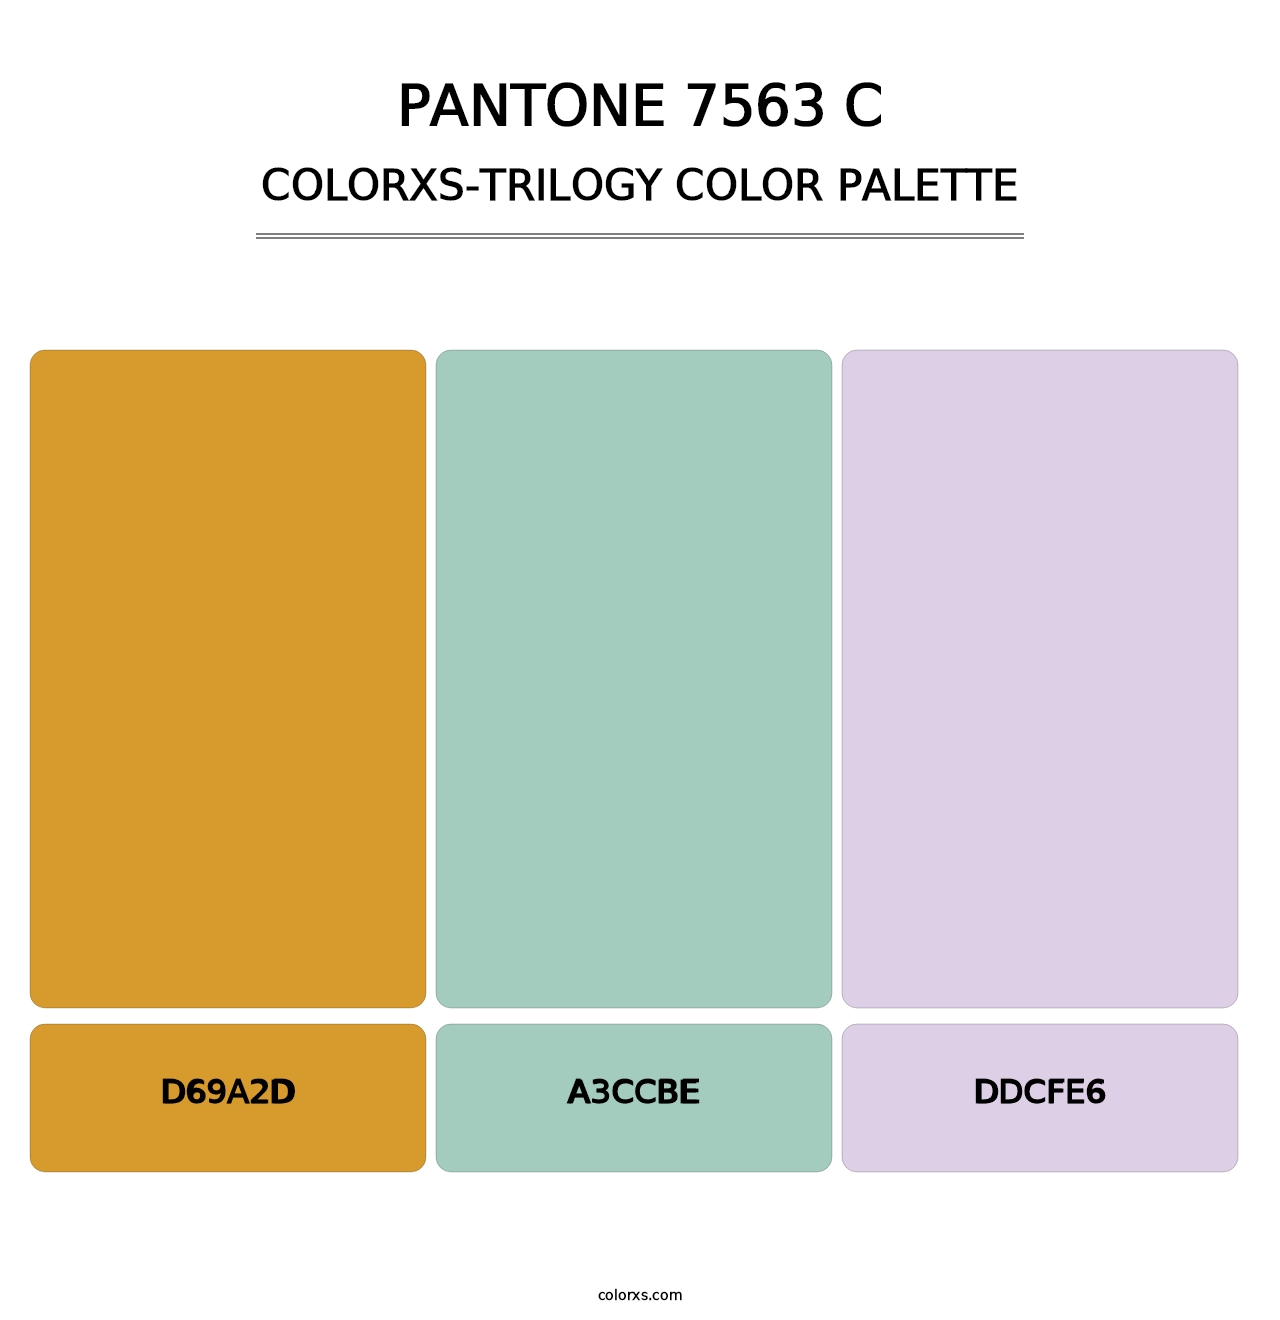 PANTONE 7563 C - Colorxs Trilogy Palette